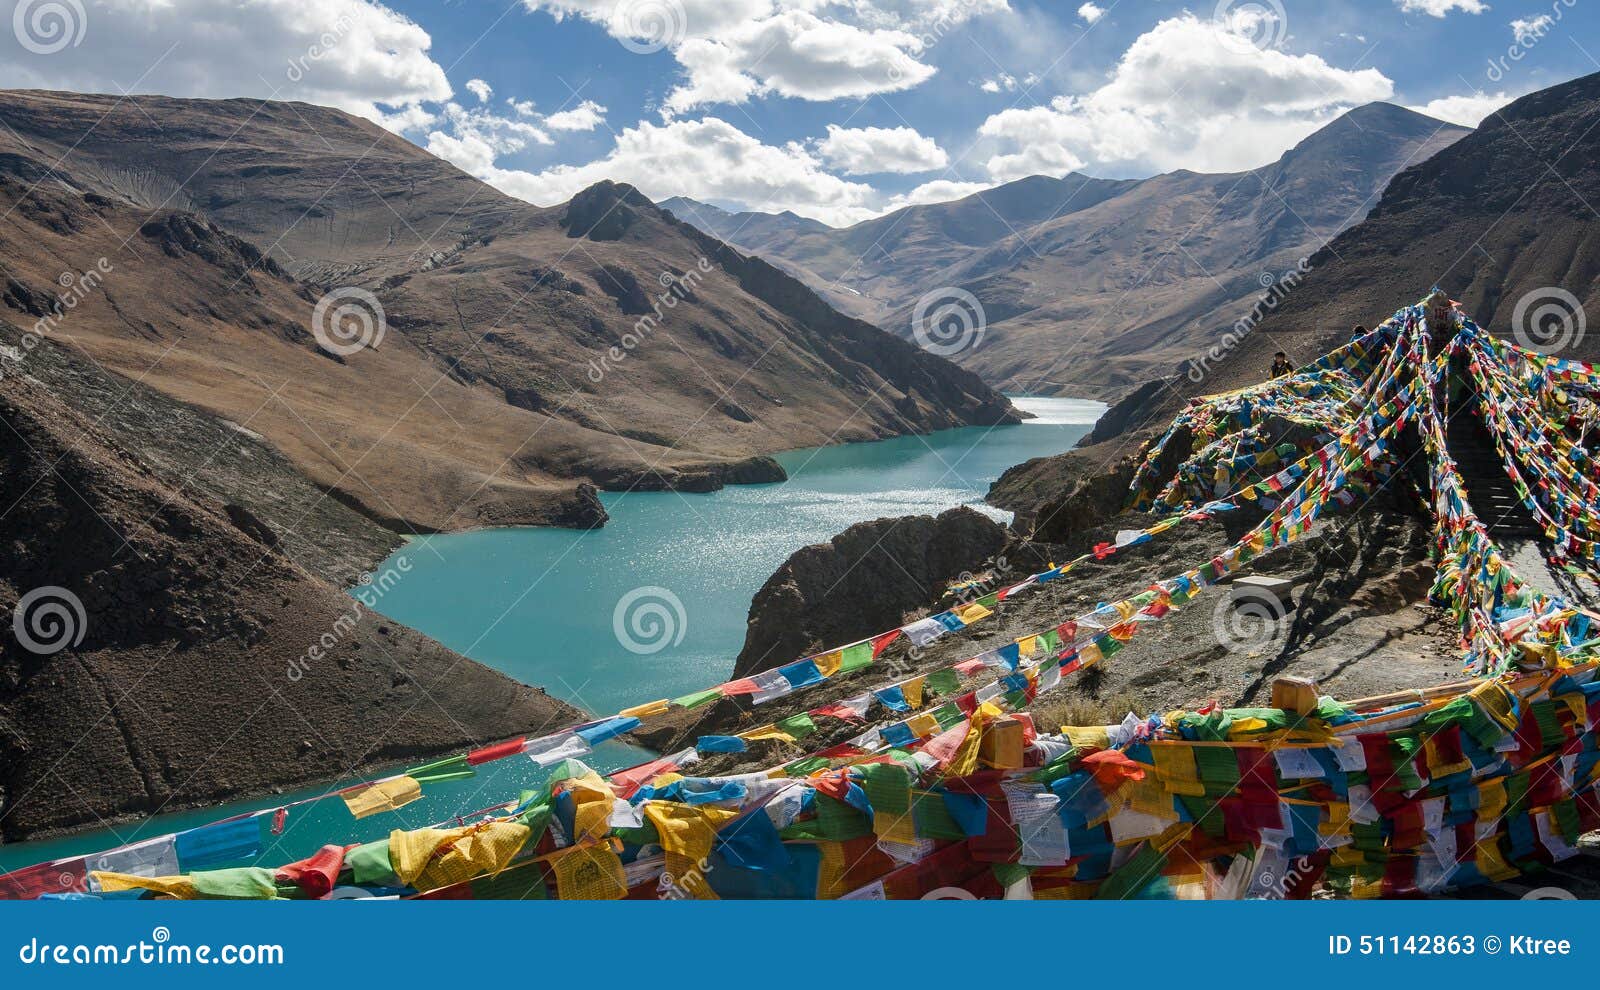 tibet scenery